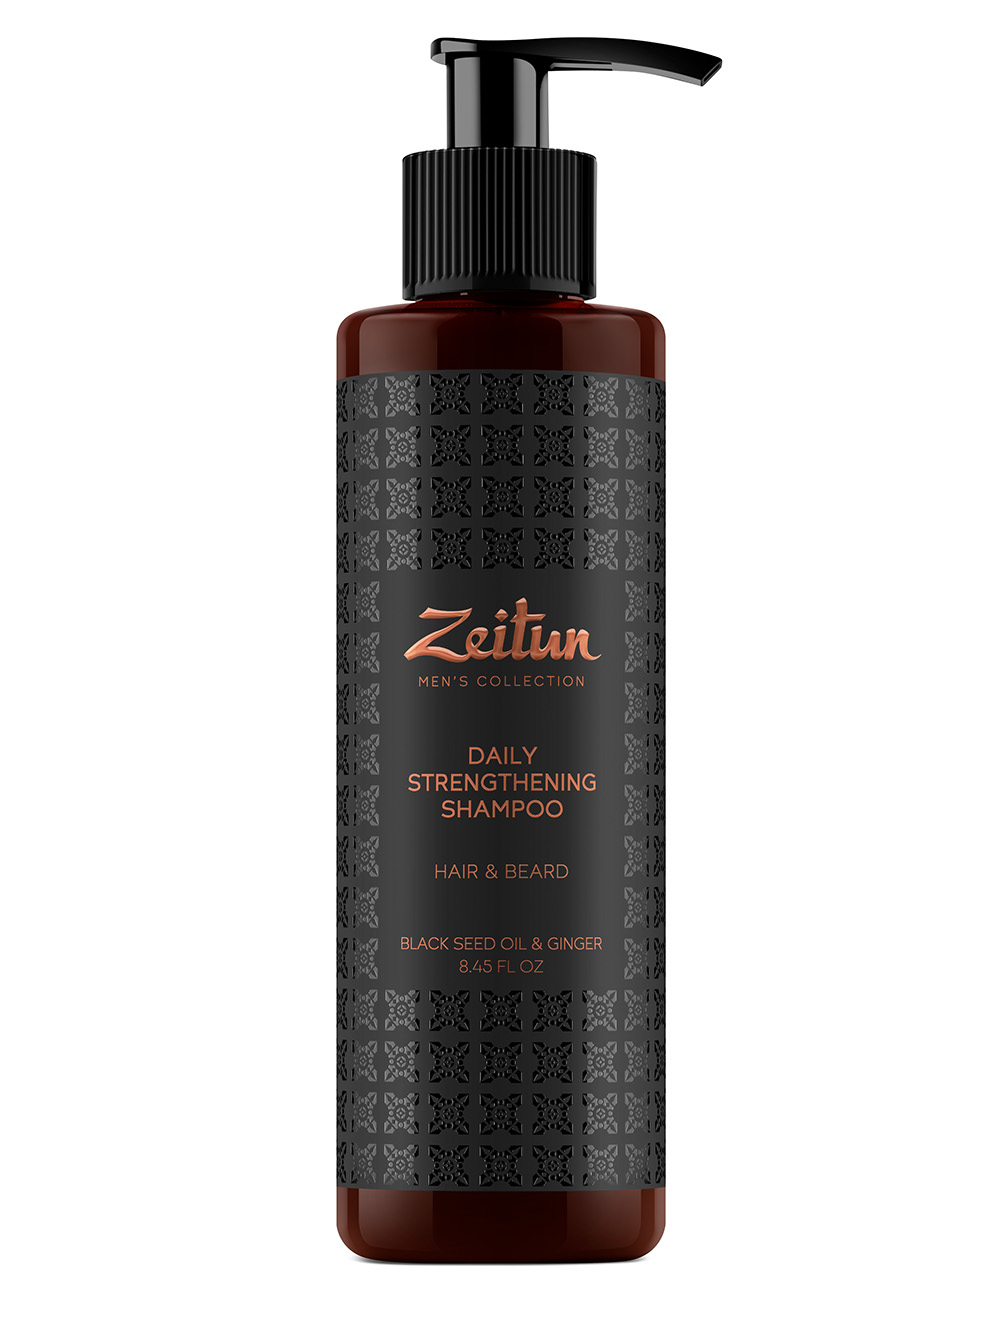 цена Zeitun Укрепляющий шампунь с имбирем и черным тмином для волос и бороды, 250 мл (Zeitun, Men's Collection)